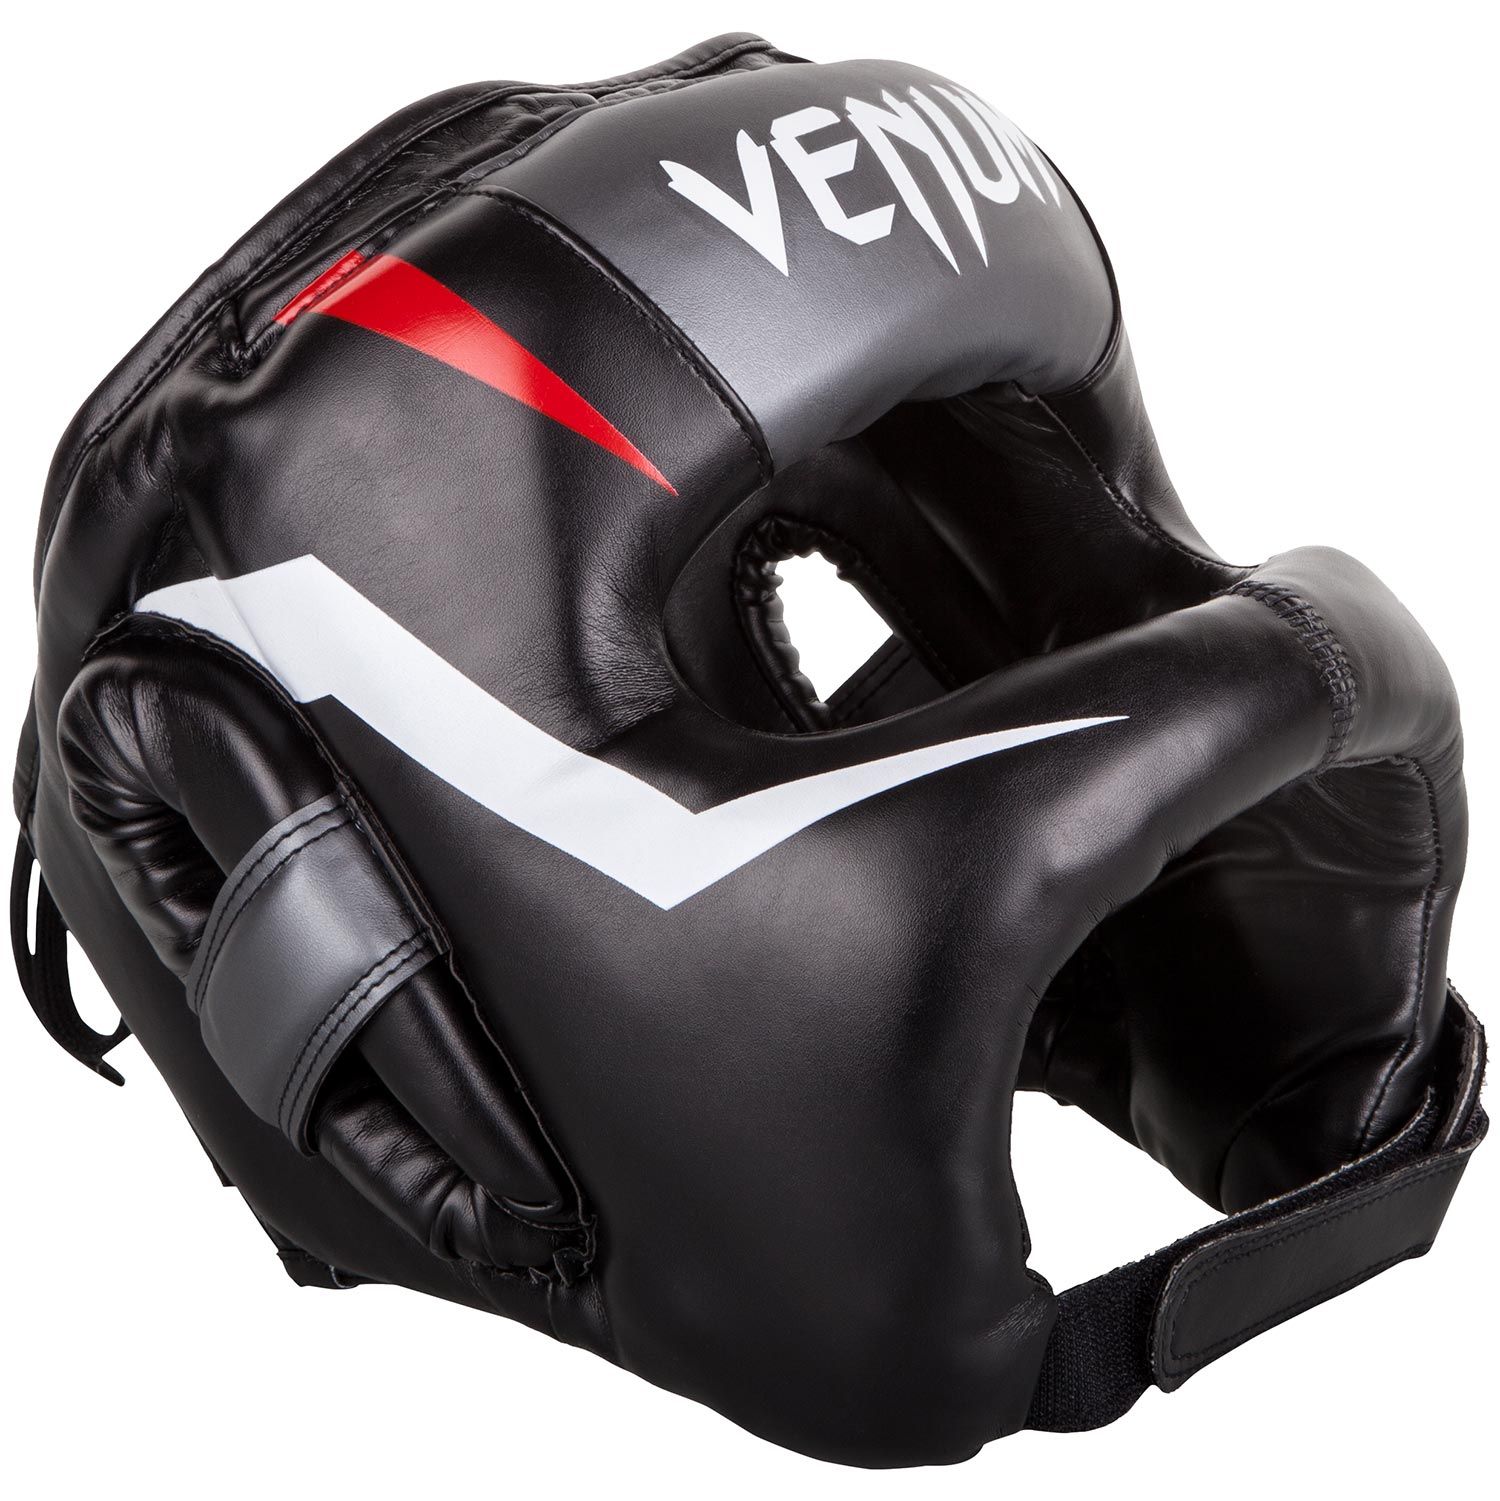 Venum Elite Iron Kopfschutz - Schwarz